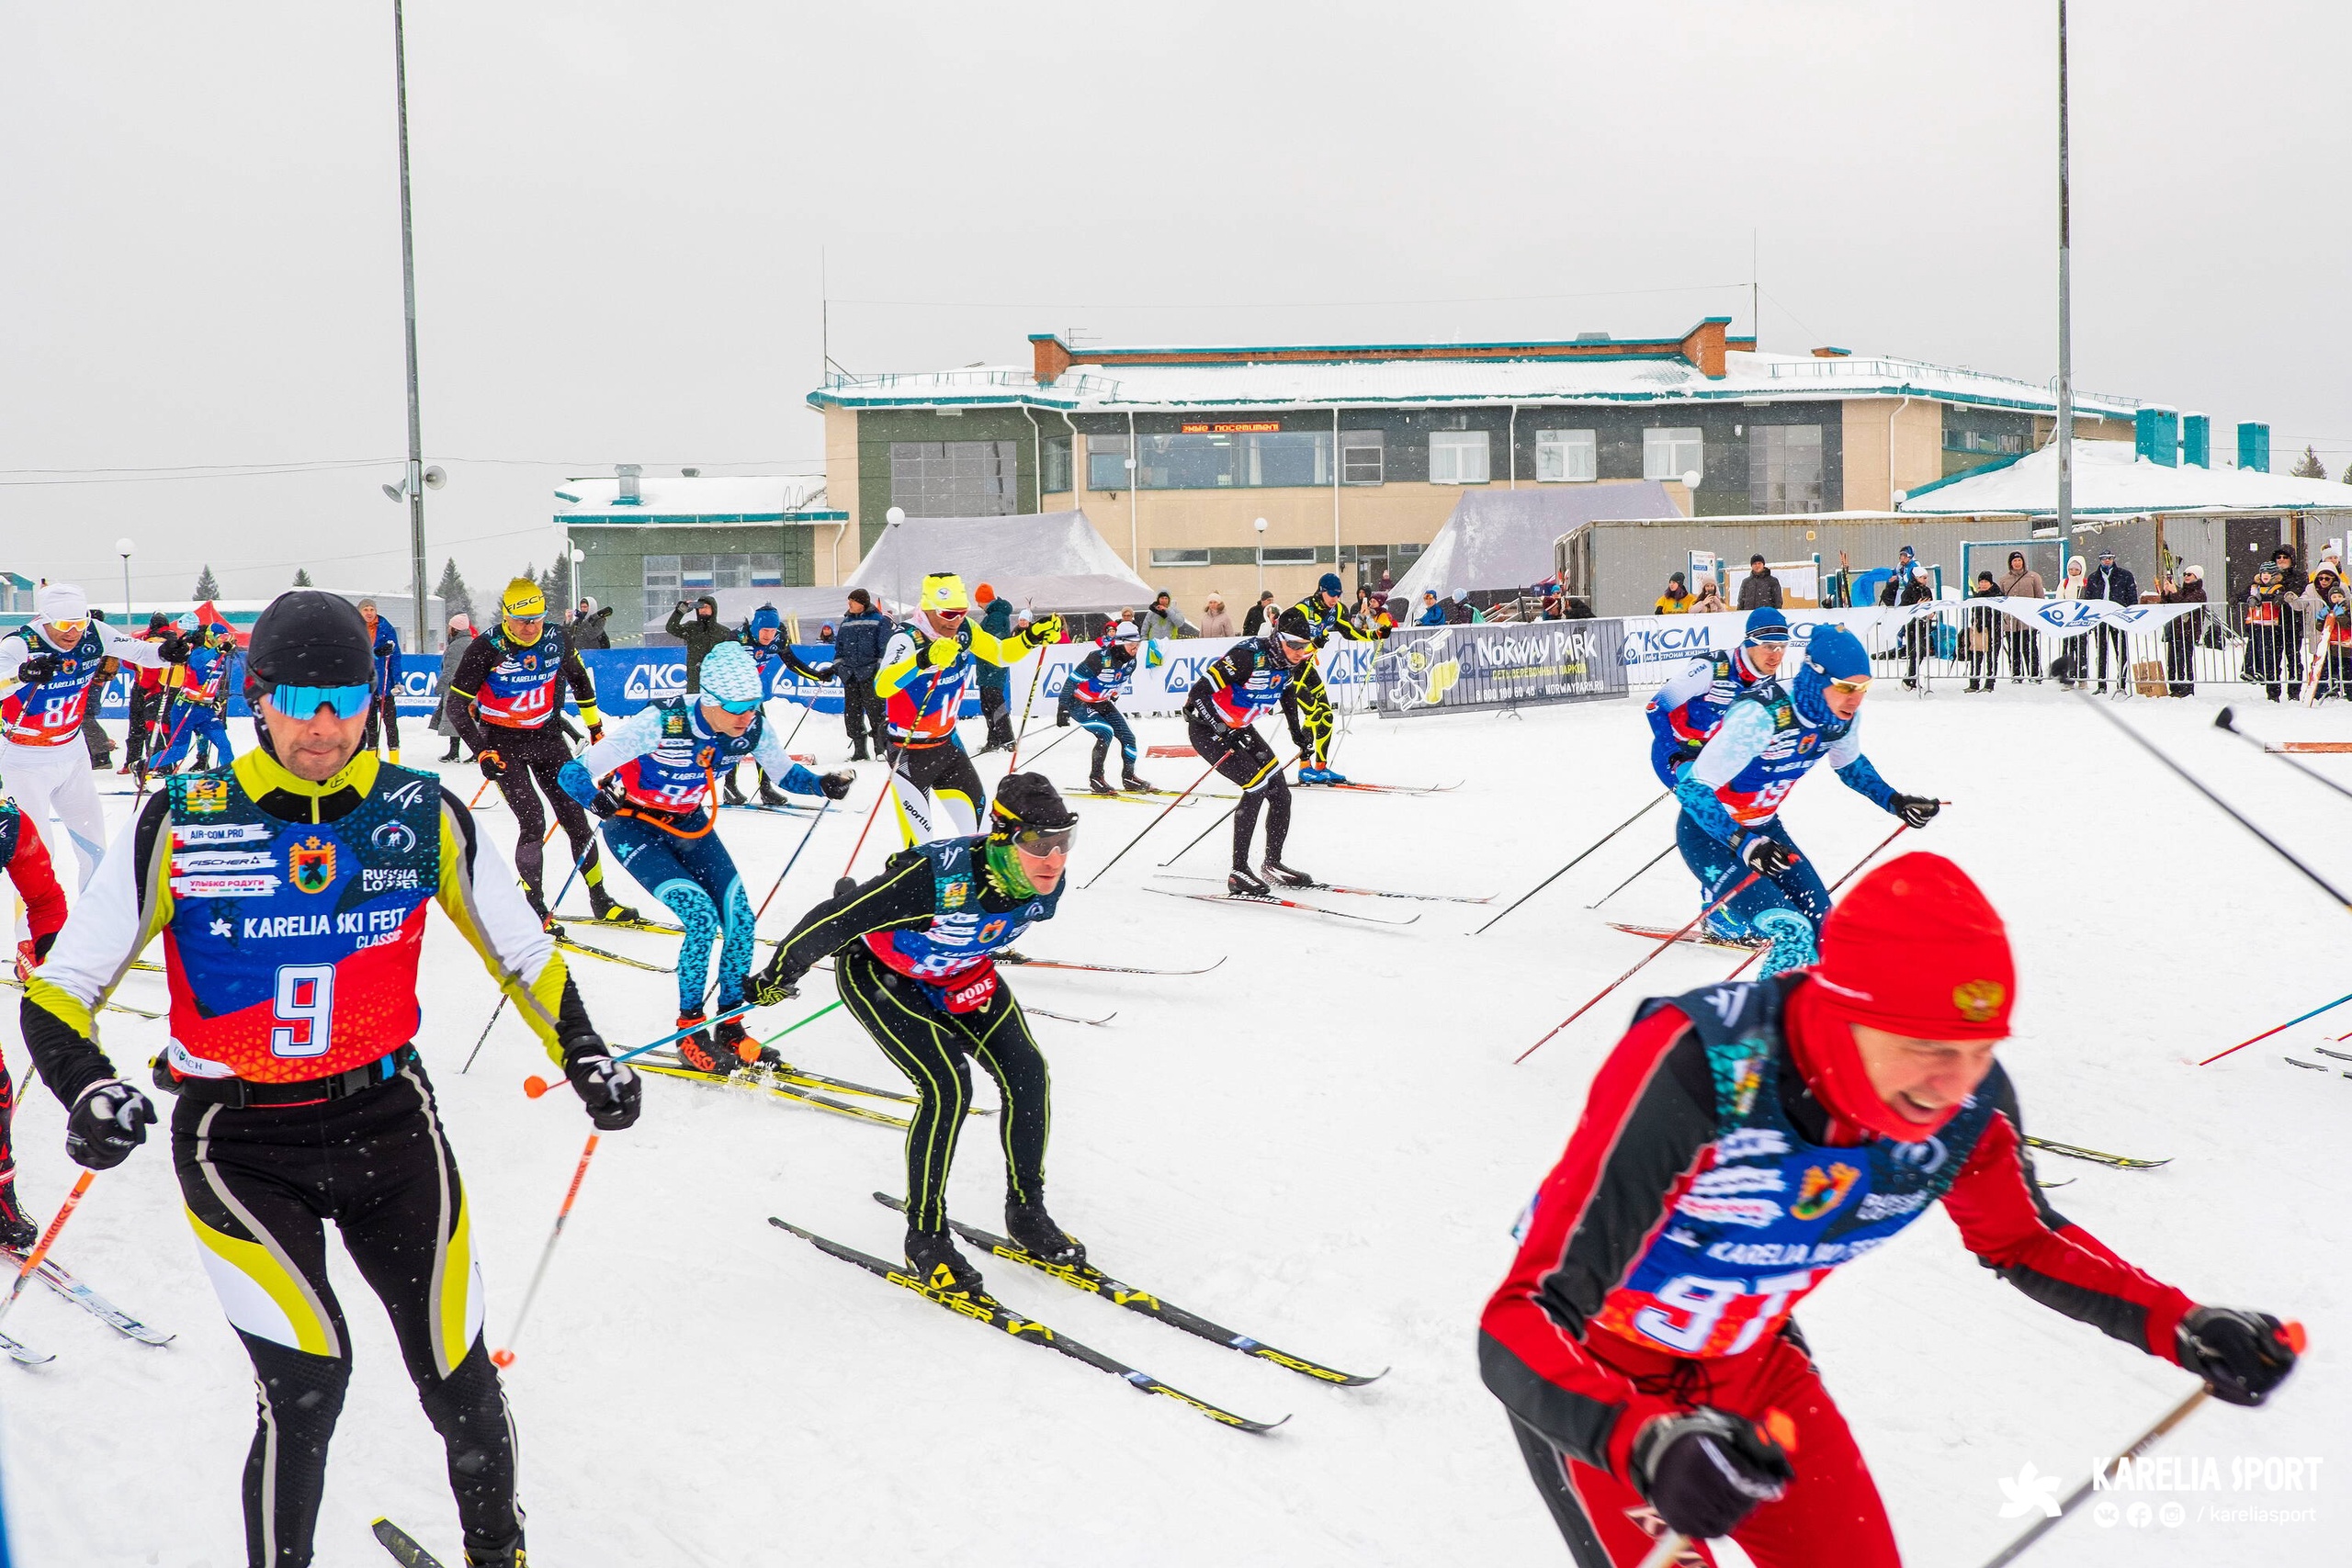 Perinteiset urheilukilpailut kokoavat vuosittain satoja urheilijoita eri puolilta maata. Kuva: KareliaSkiFesti-urheilufestivaalin Vkontakte-sivu